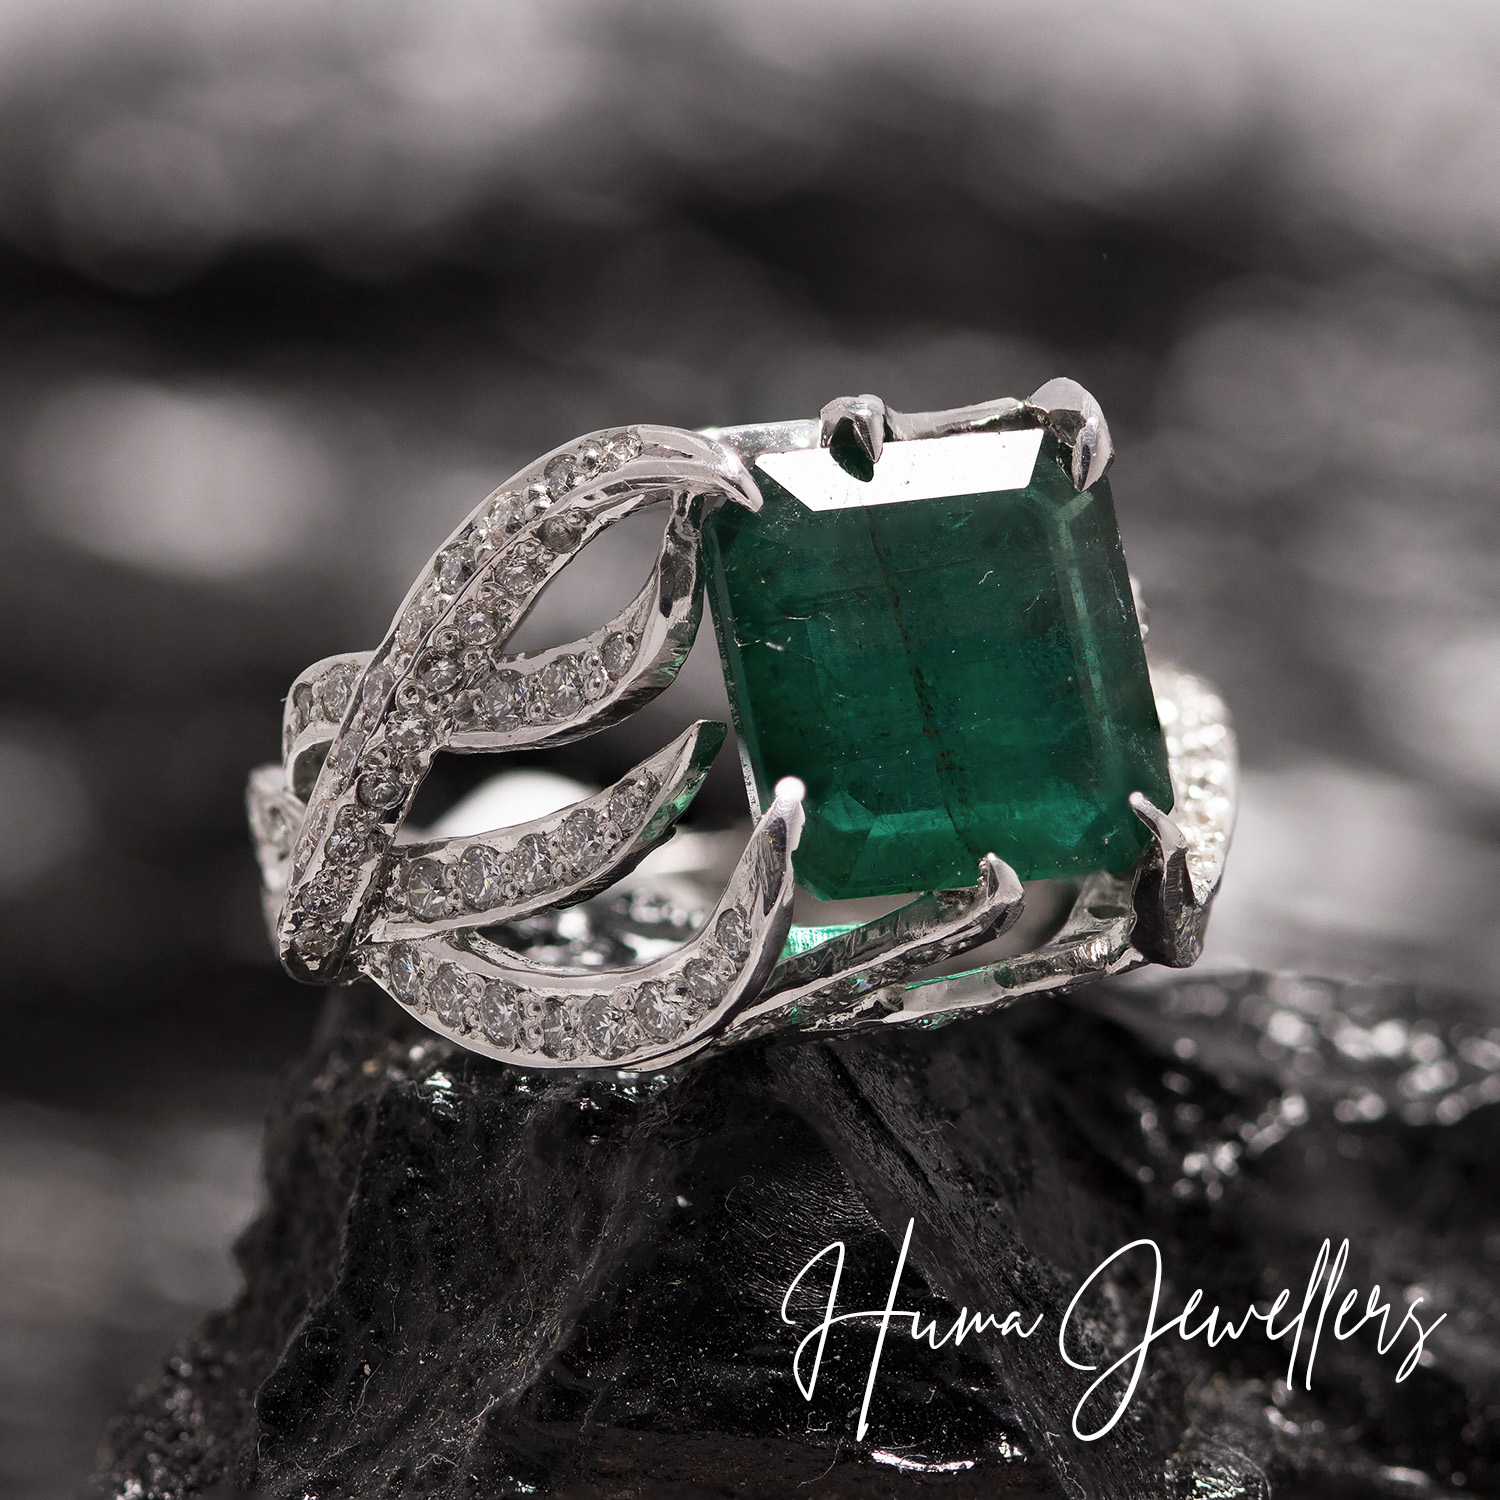 modern women diamond ring design with zambian emerald by huma jewellers jewelry karachi pakistan